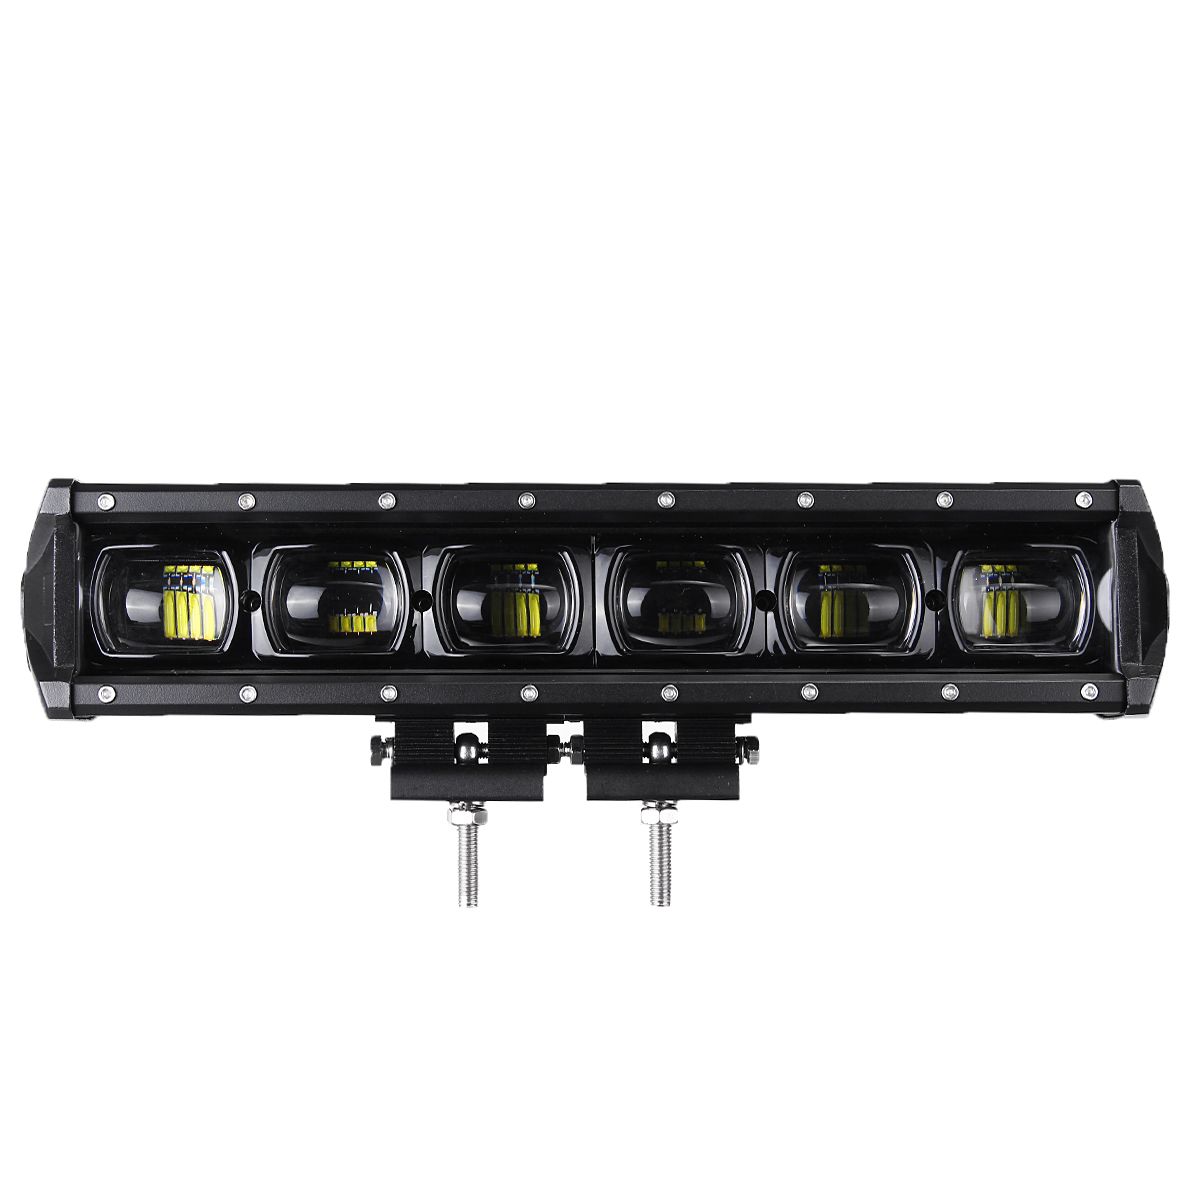 15Inch-60W-LED-Work-Light-Bars-9D-Lens-Single-Row-6000K-9-32V-For-Off-Road-4WD-Trucks-SUV-ATV-Traile-1608283